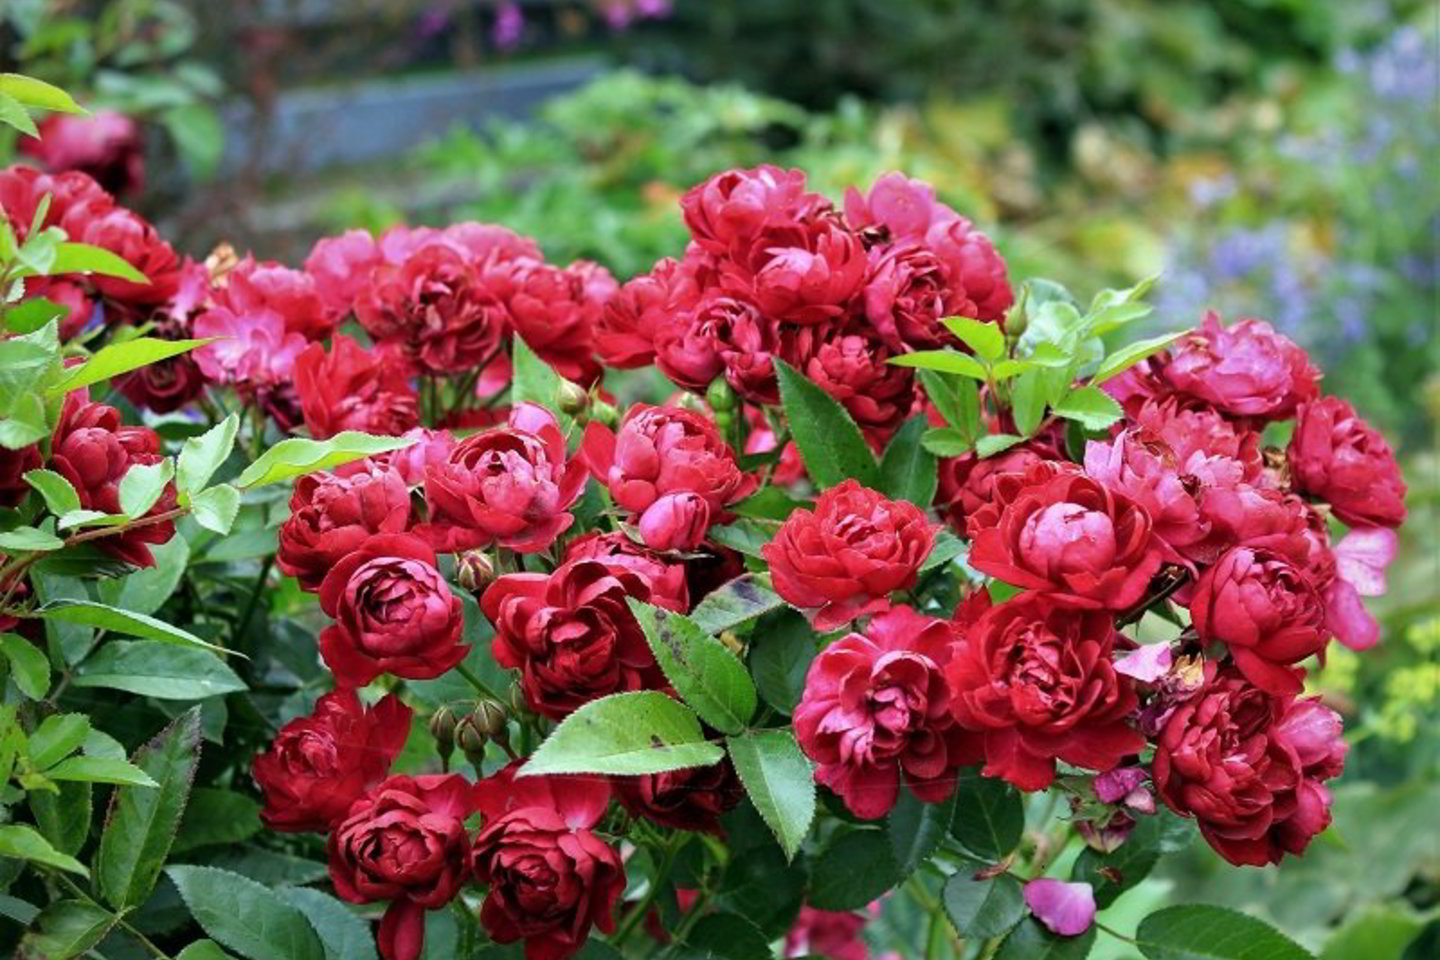  Be pavasarinių šalnų, rožėms gali pakenkti iššutimas, dirvos užmirkimas, po žiemos iškilęs gruntas.<br> R.Laurinavičienės nuotr.